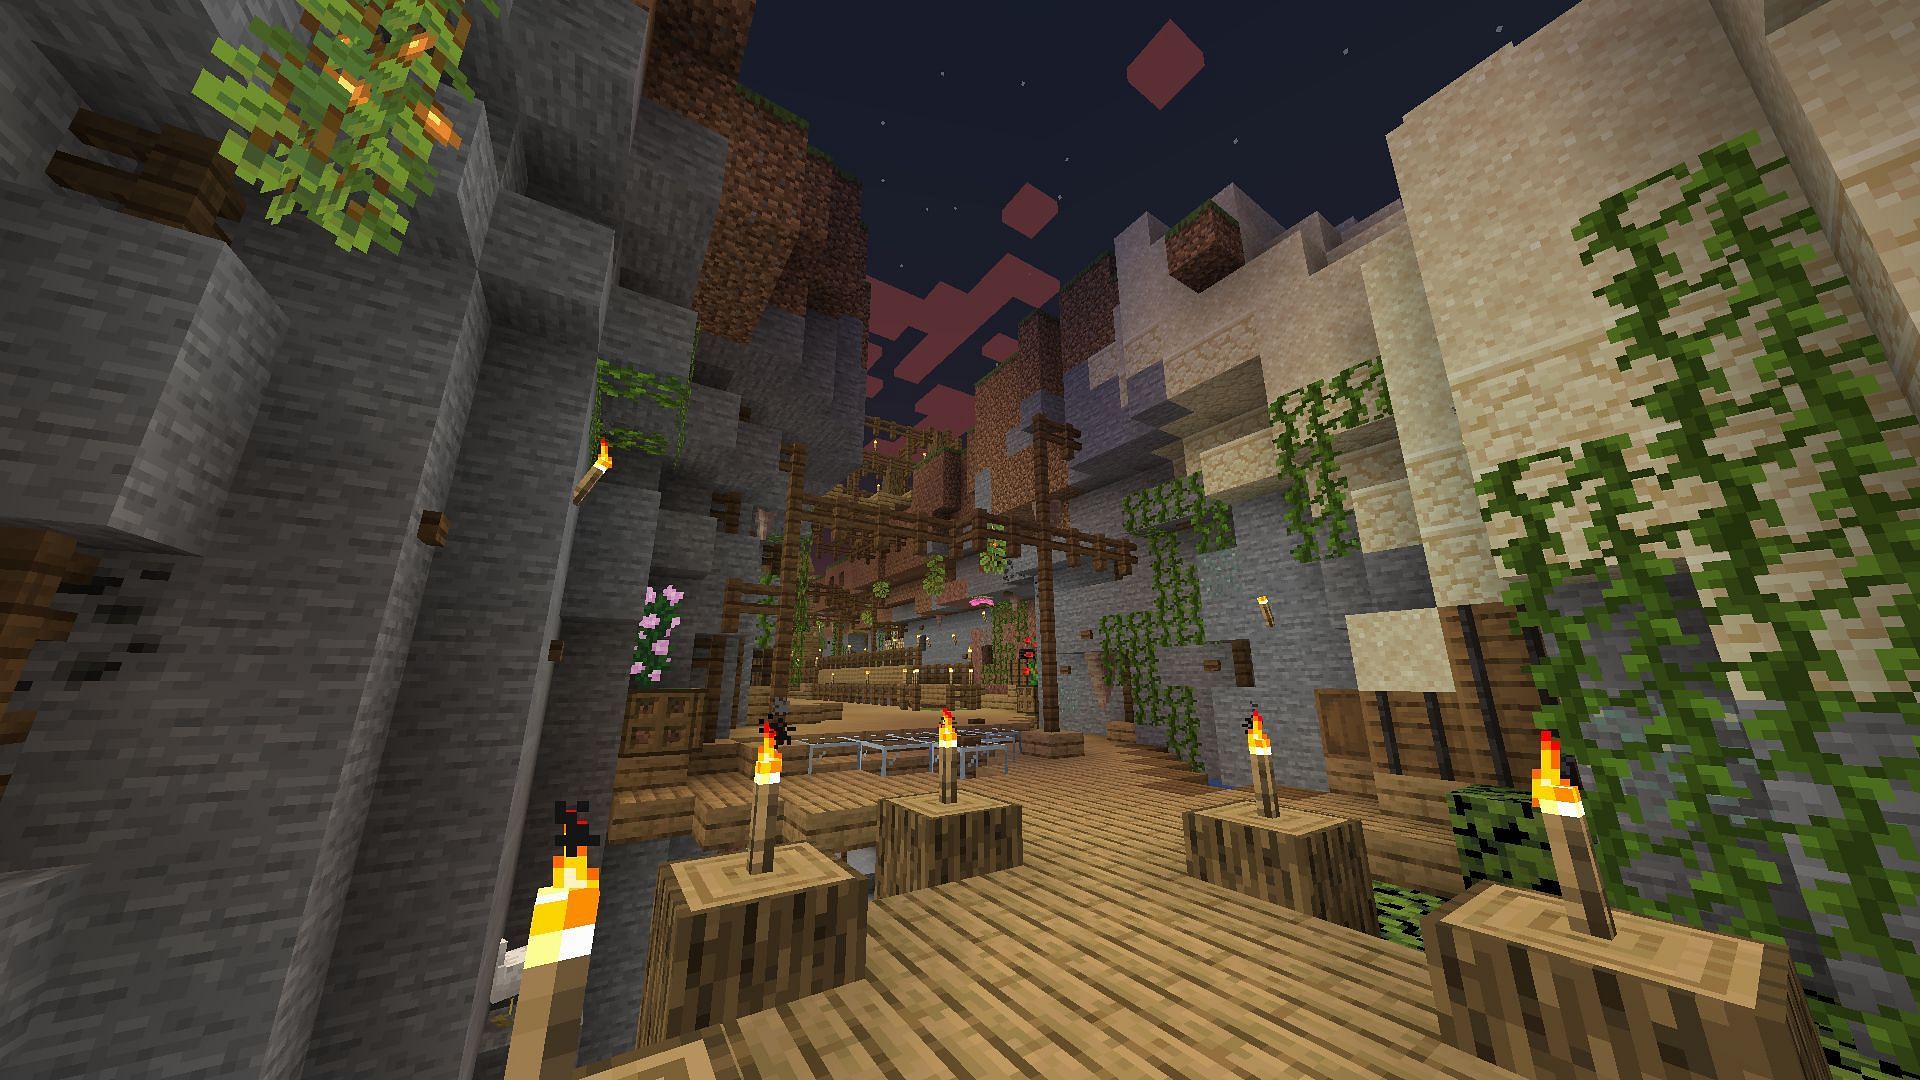 A ravine base in Minecraft (Image via u/Gh0stOfTheUchiha on Reddit)